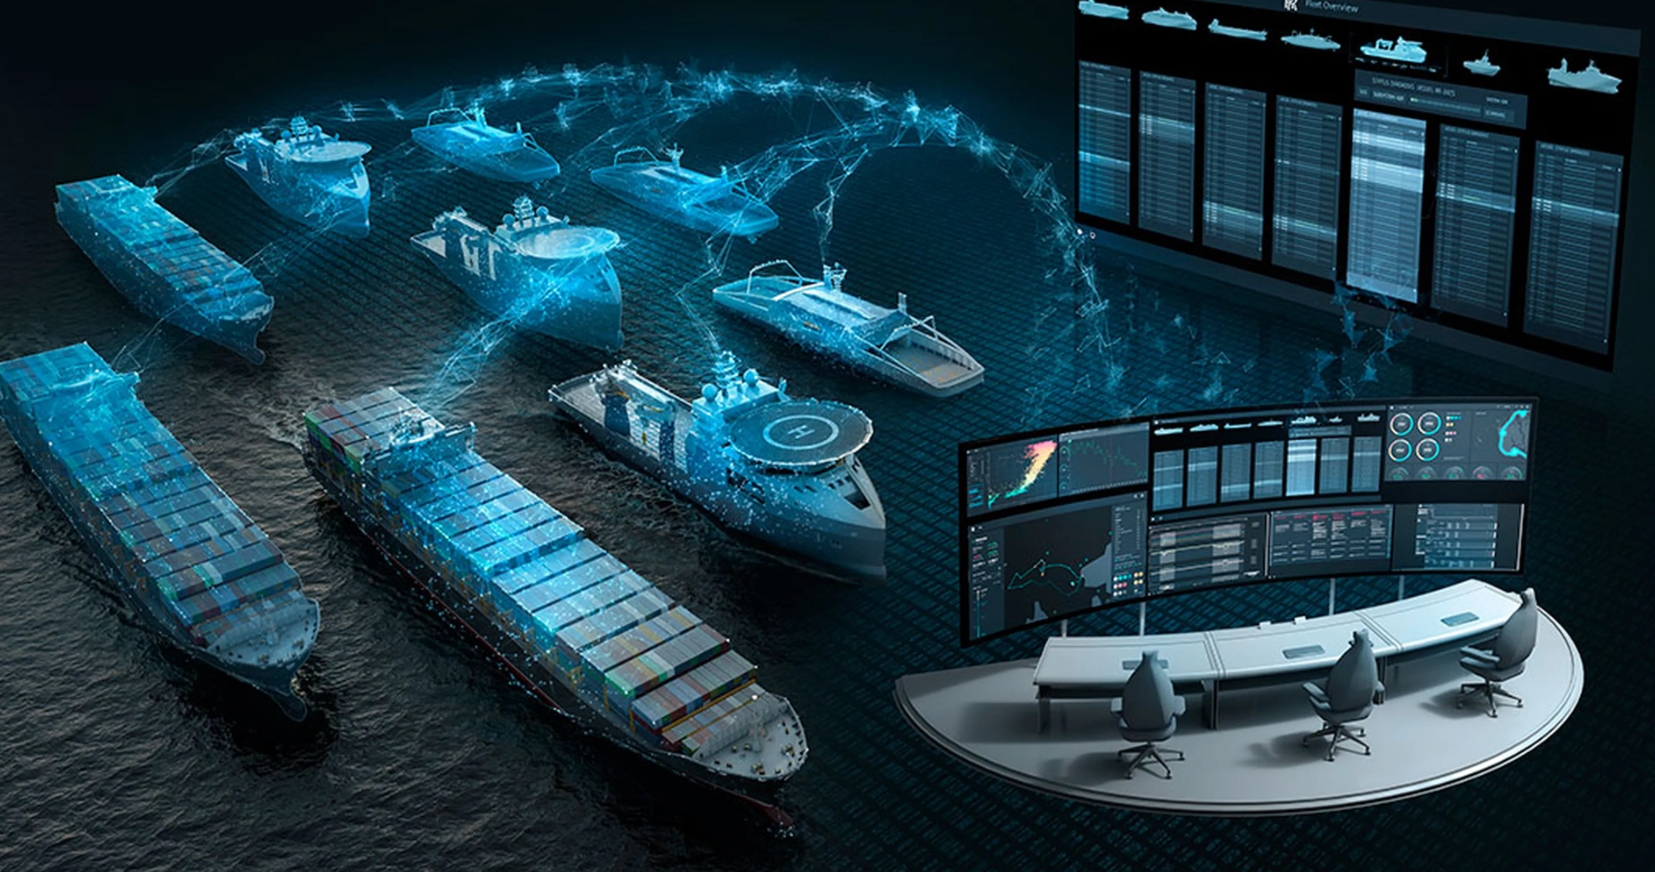 El futuro de la náutica: accesorios y tecnologías útiles para barcos. Cosas útiles para barcos.